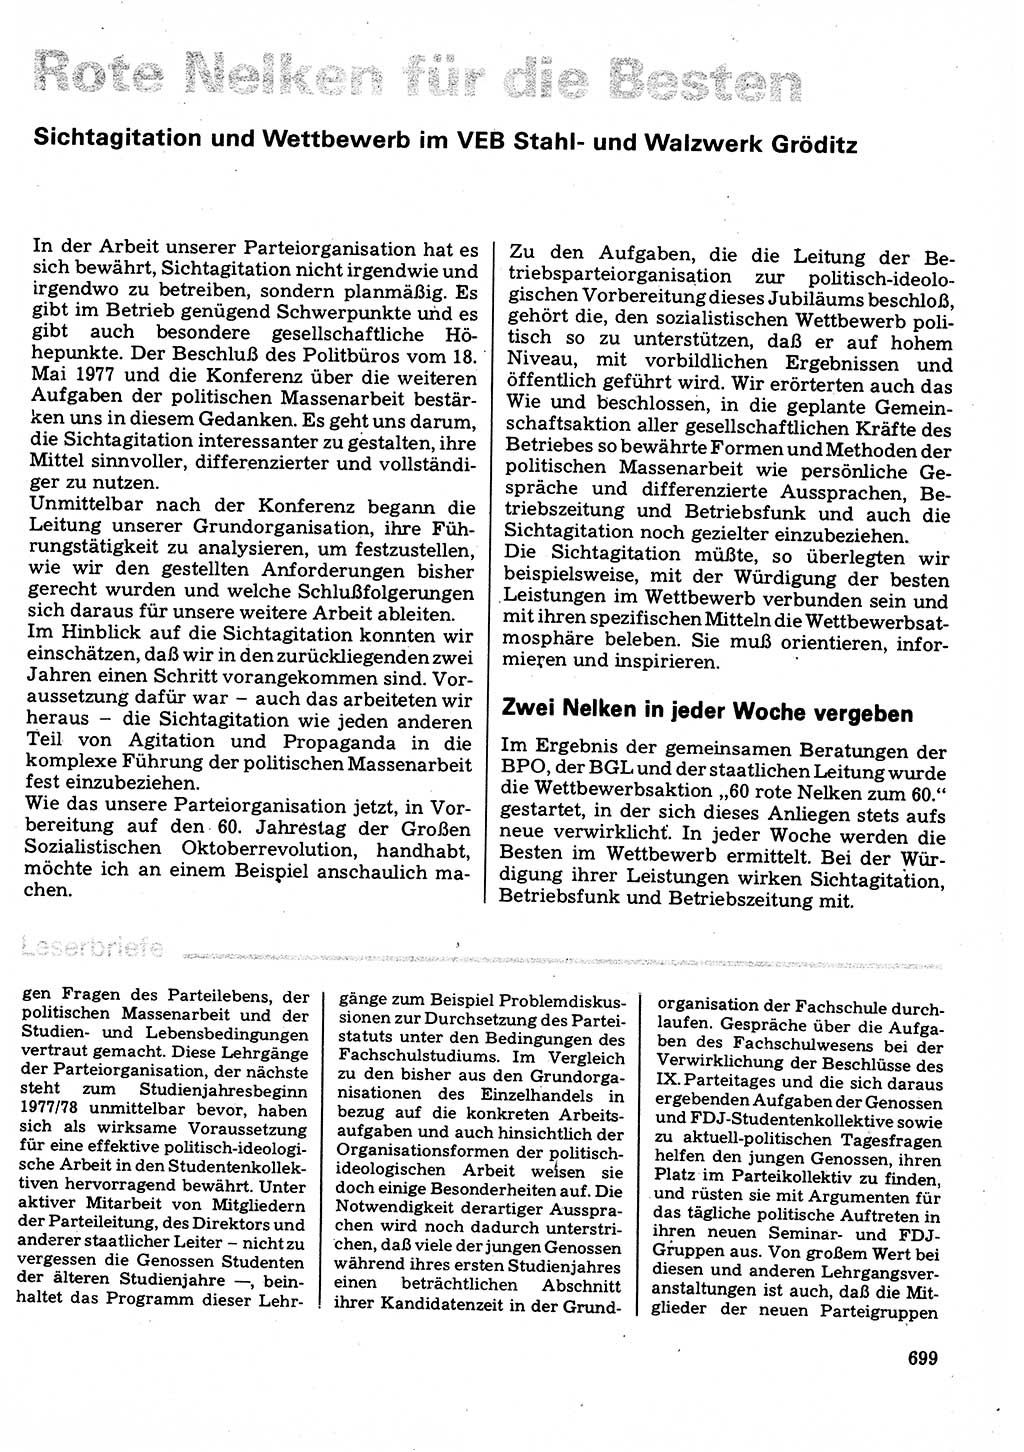 Neuer Weg (NW), Organ des Zentralkomitees (ZK) der SED (Sozialistische Einheitspartei Deutschlands) für Fragen des Parteilebens, 32. Jahrgang [Deutsche Demokratische Republik (DDR)] 1977, Seite 699 (NW ZK SED DDR 1977, S. 699)